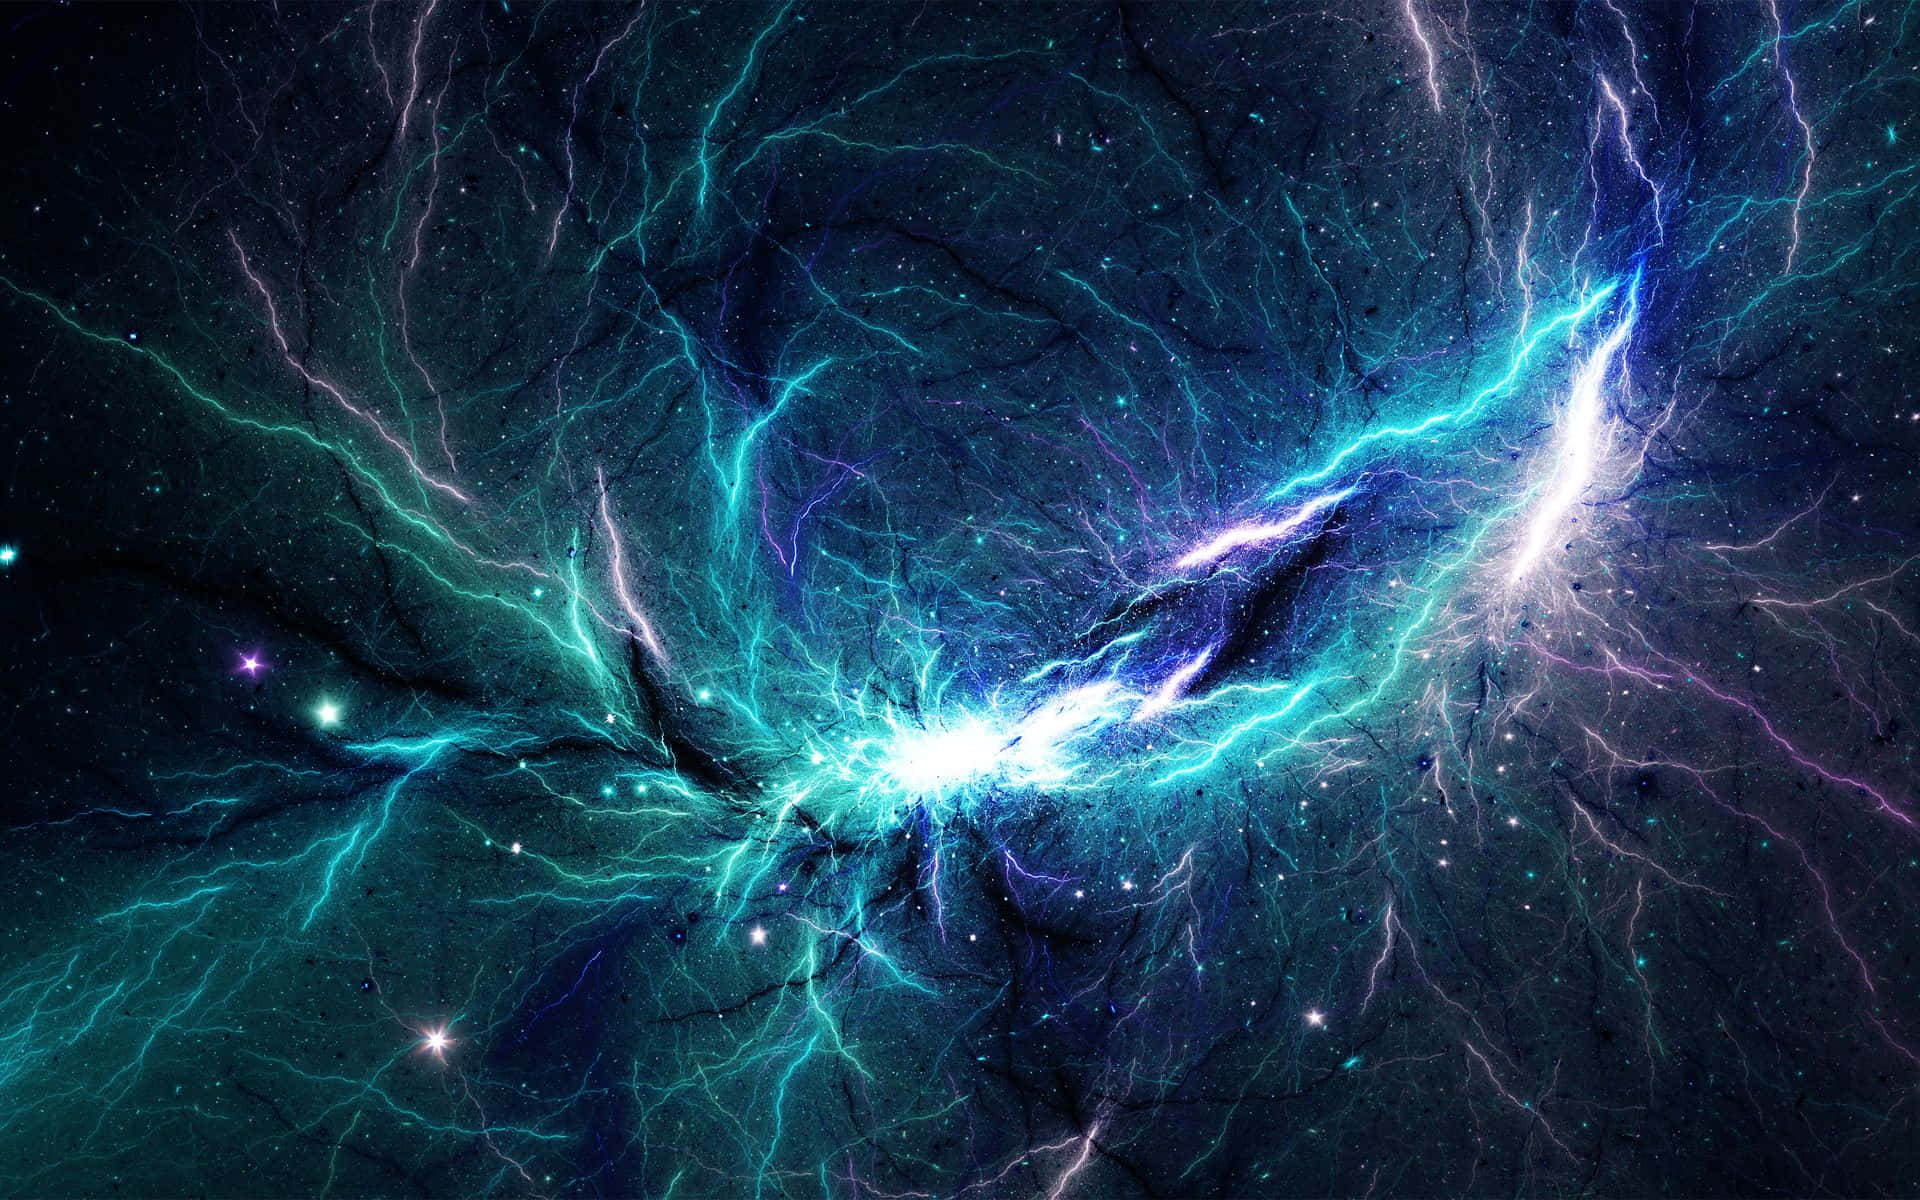 Astronomisktunderverk Av En Rymdnebulosa. Wallpaper